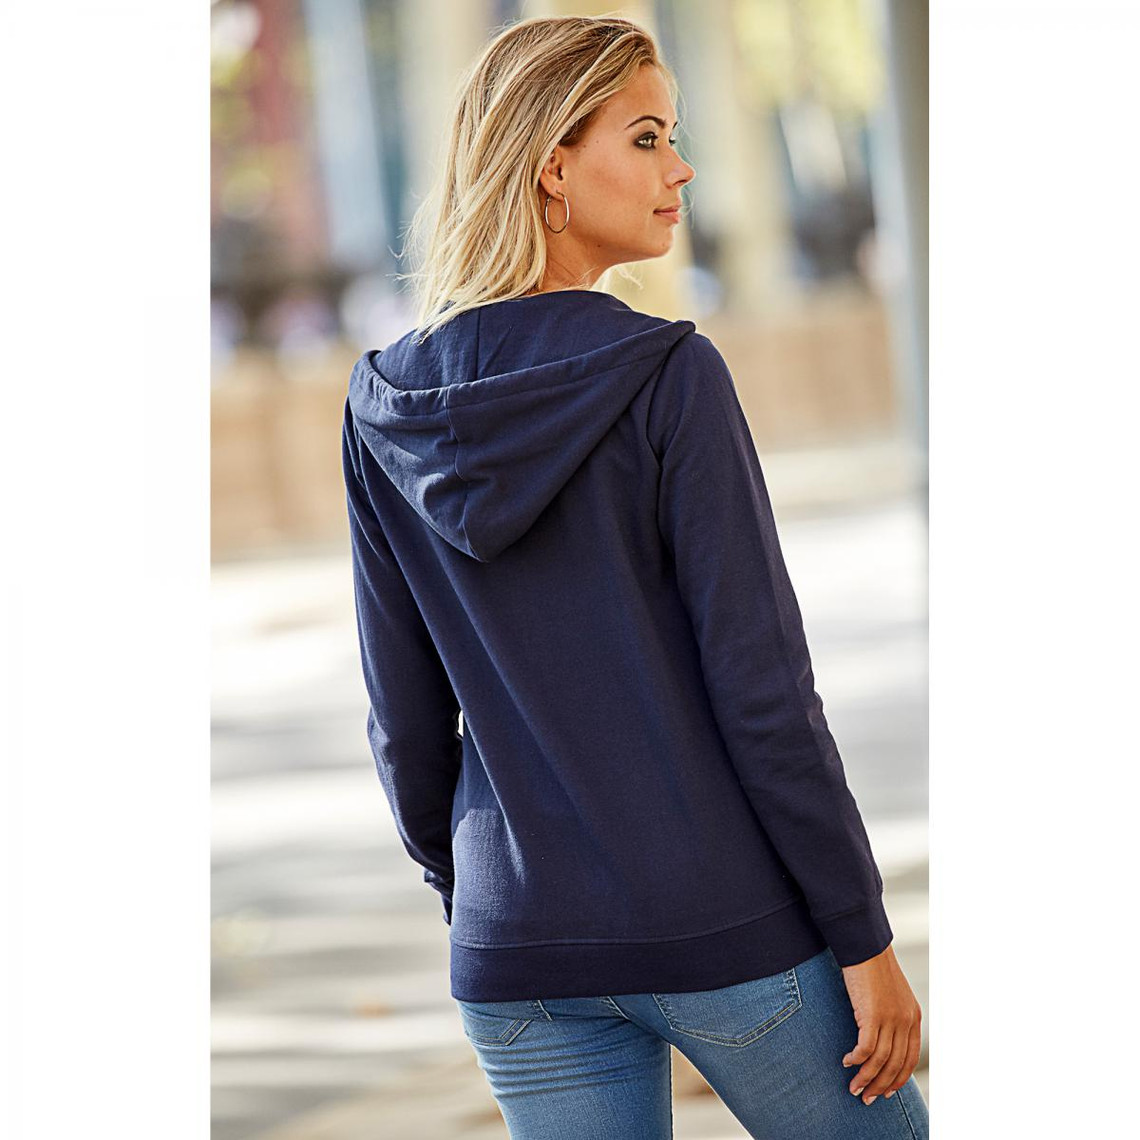 Sweat zippé à capuche poche kangourou femme - Bleu marine en coton